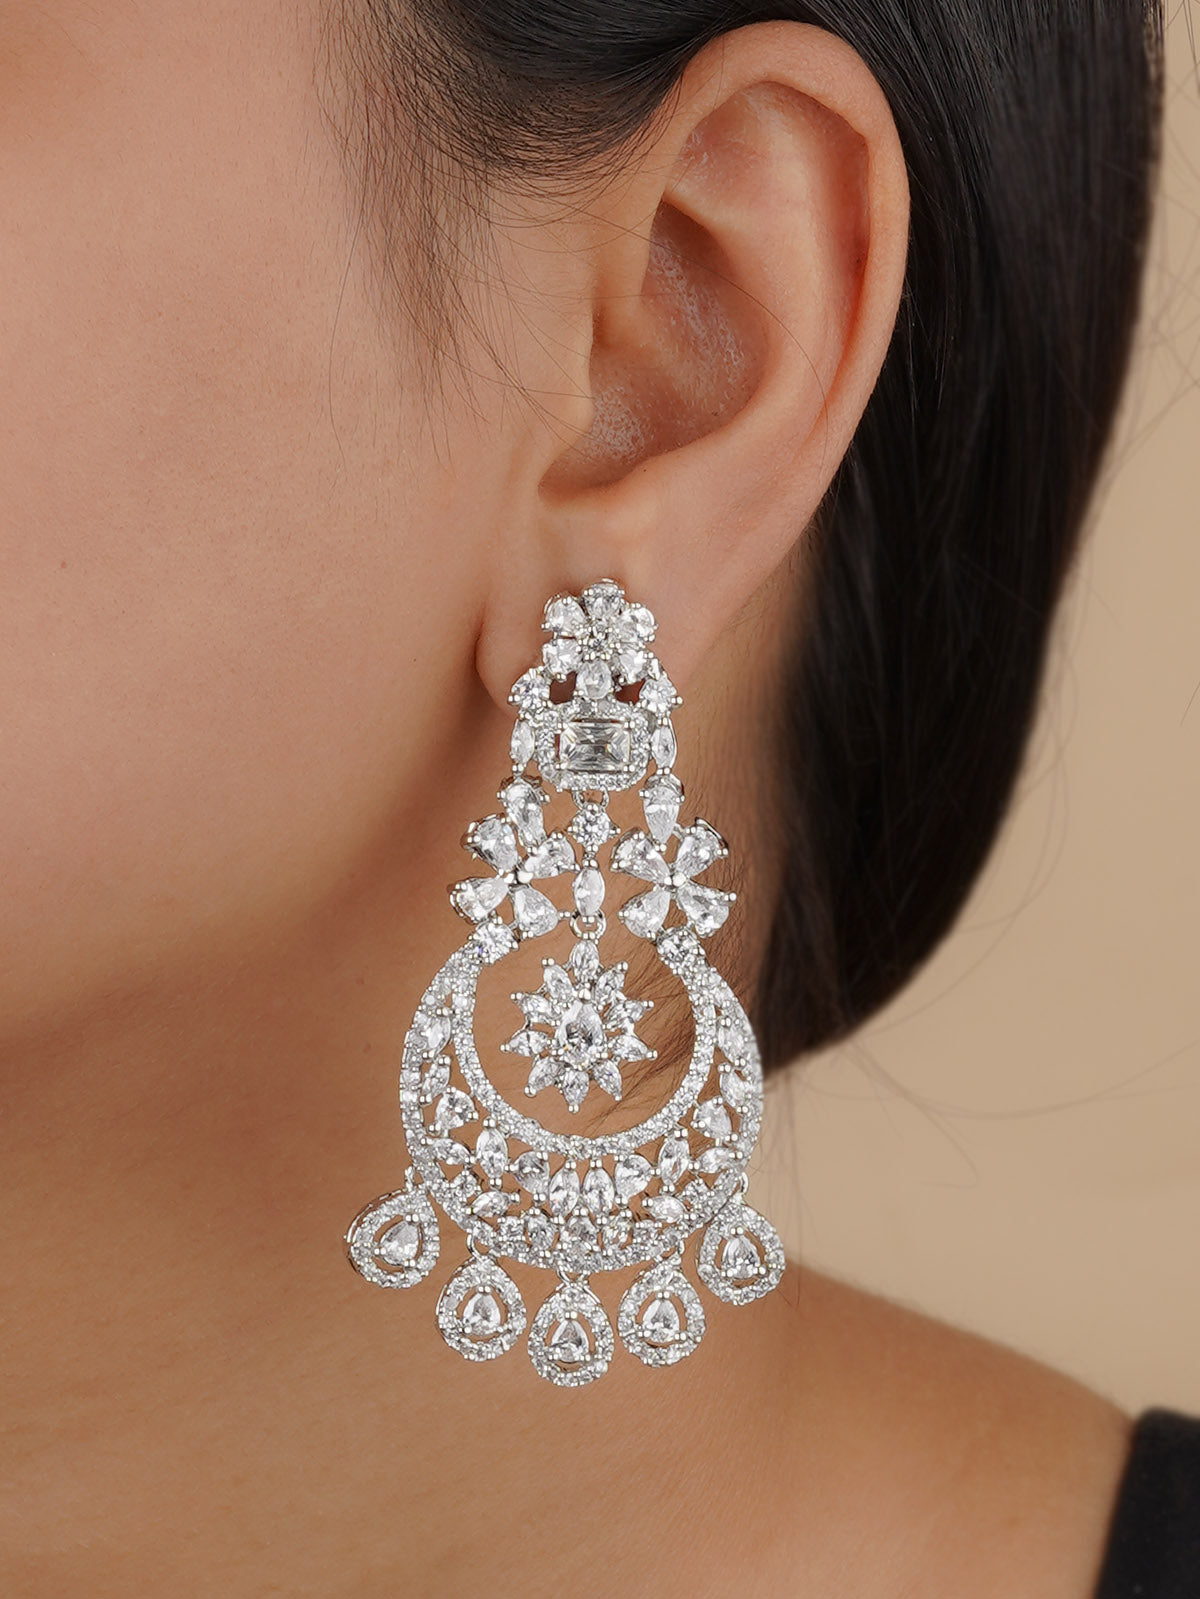 CZEAR536 - Silver Plated Faux Diamond Earrings